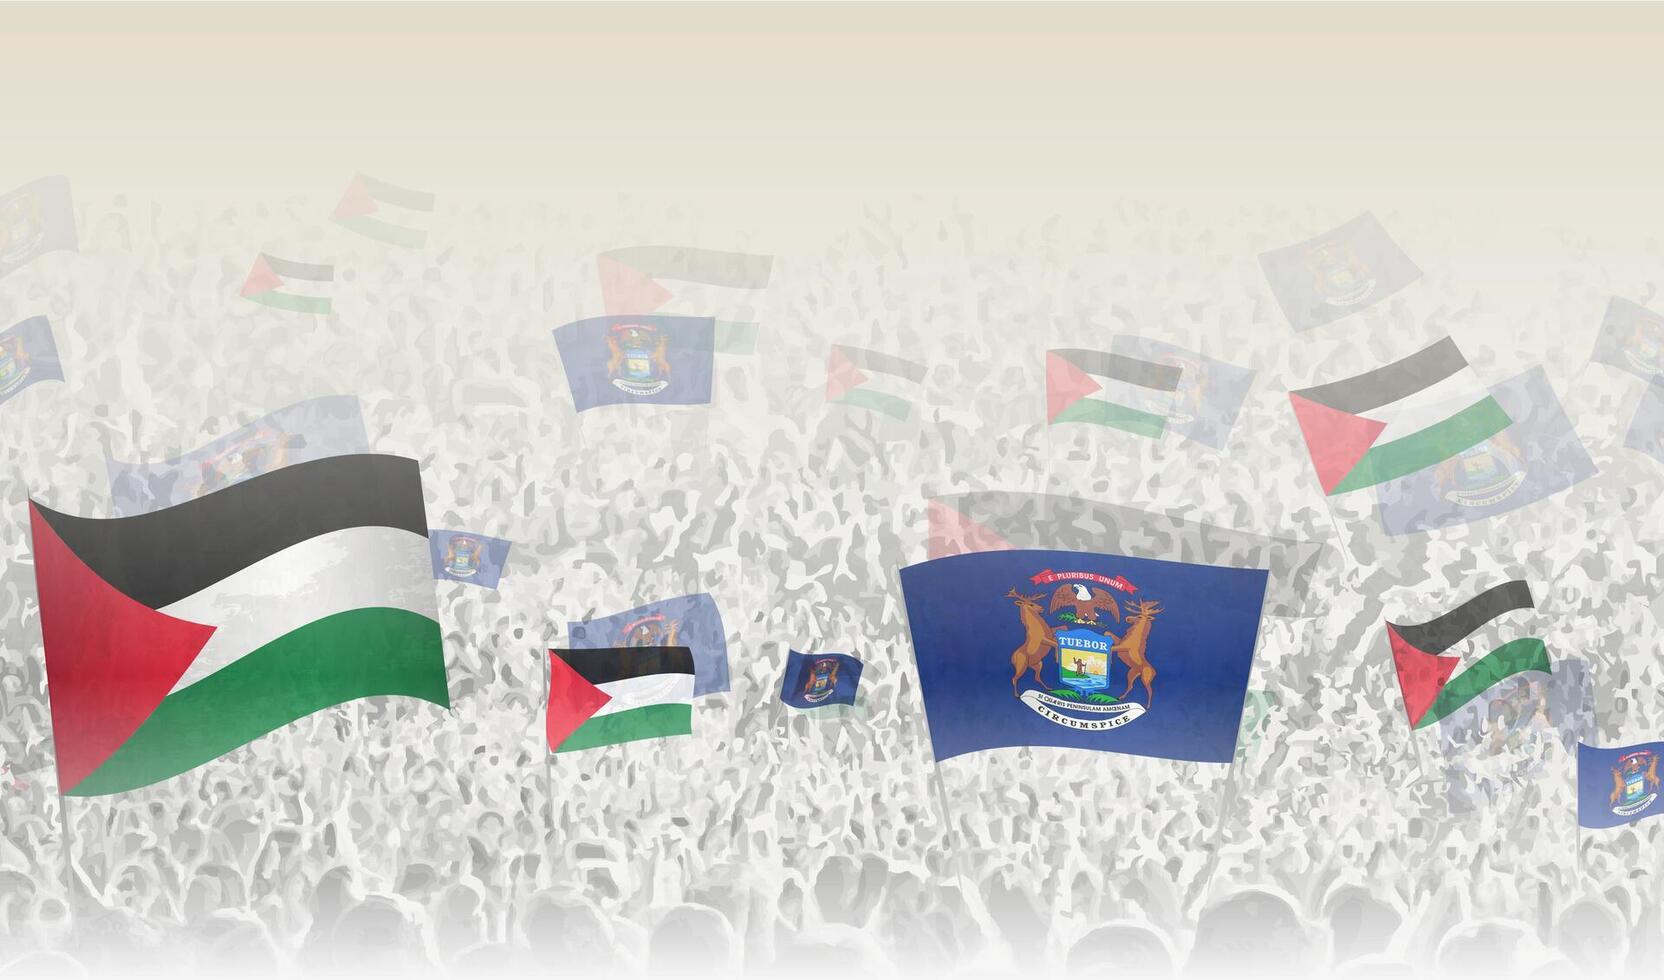 Palestine et Michigan drapeaux dans une foule de applaudissement personnes. vecteur